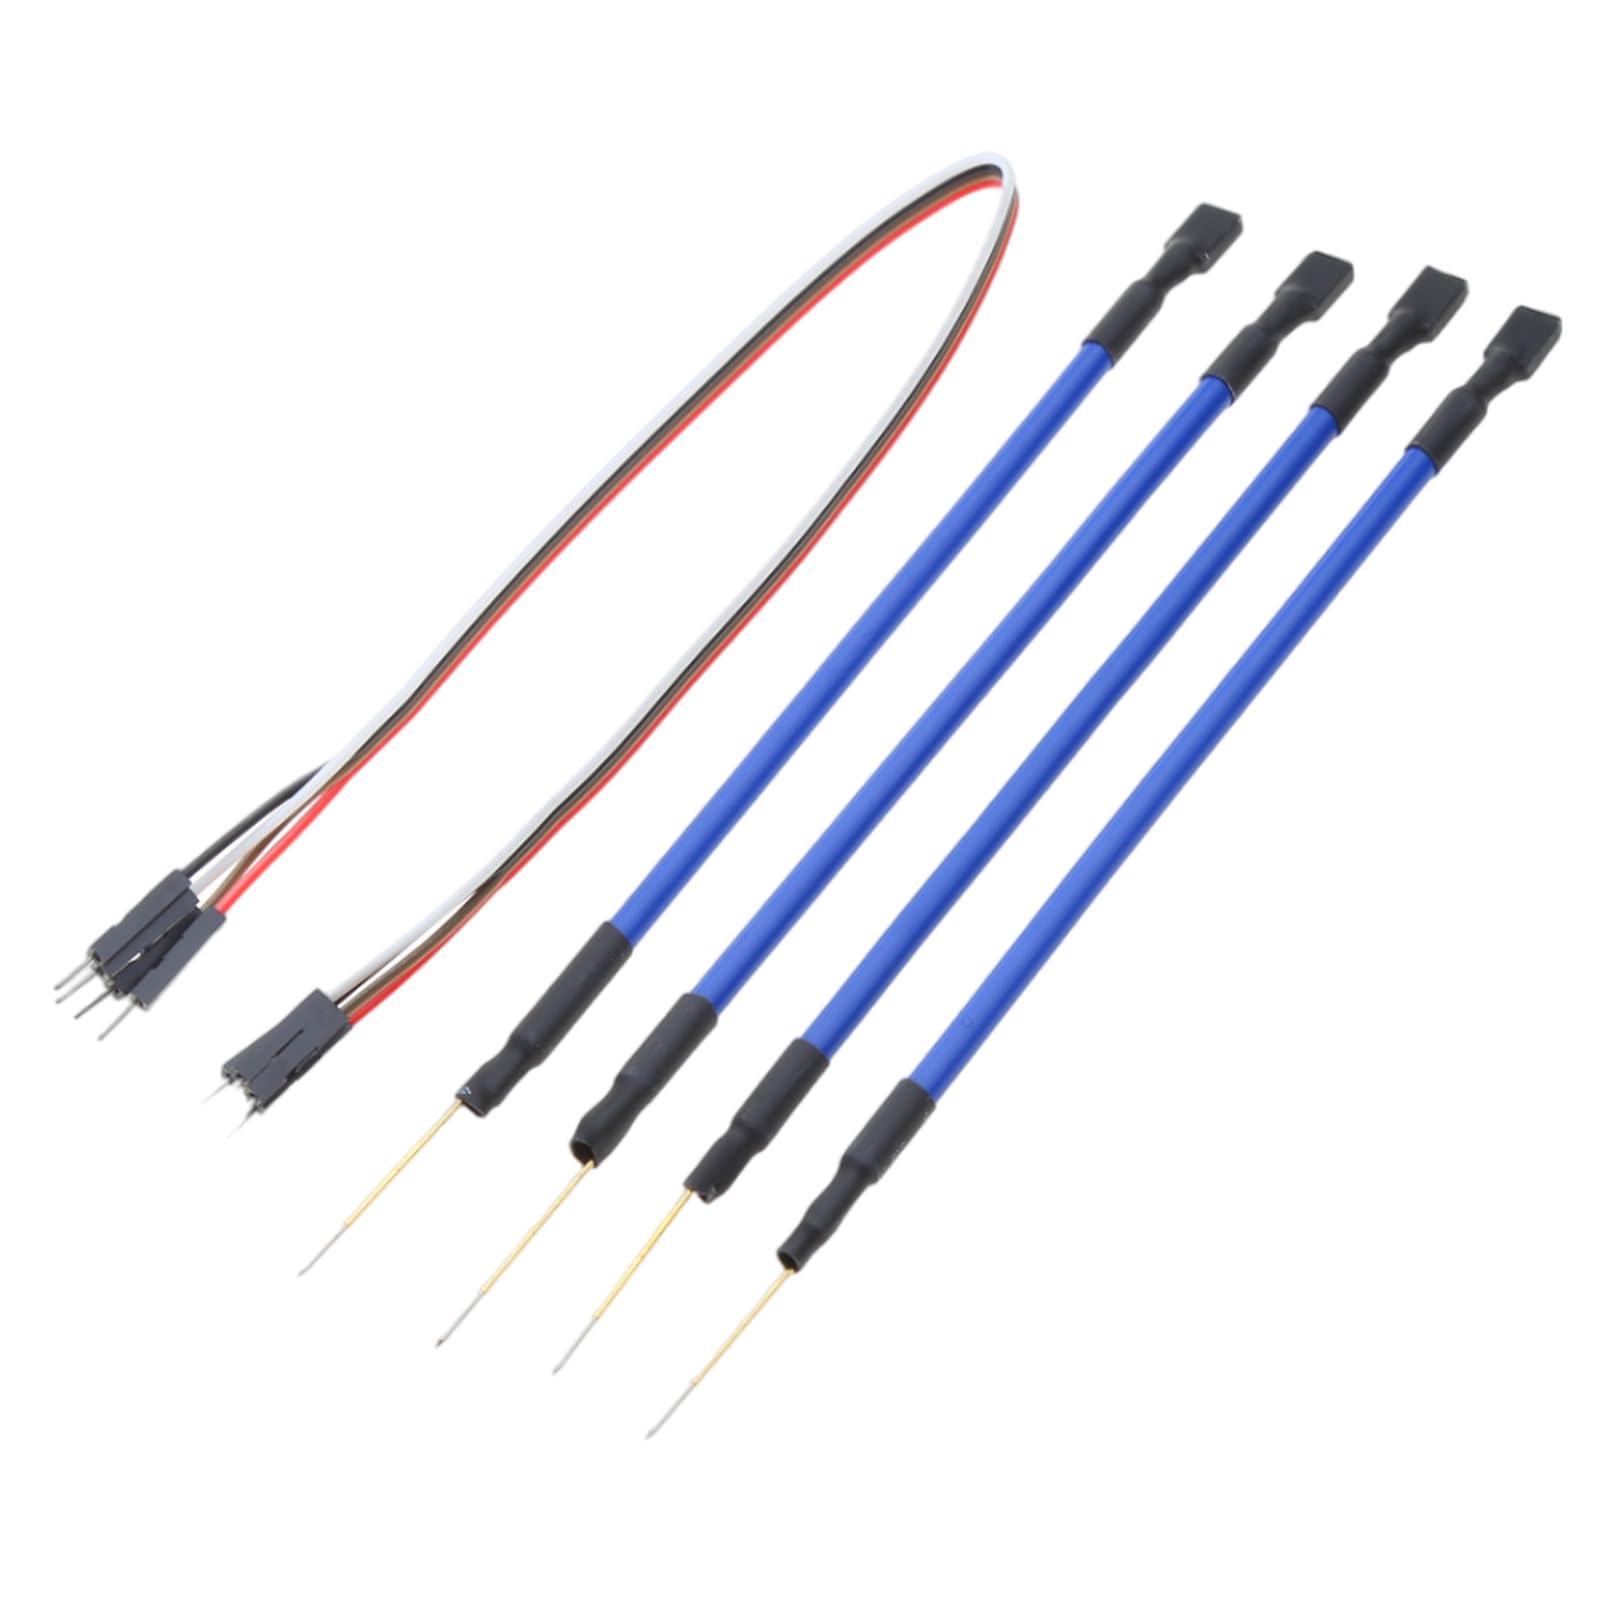 Zeiwohndc Sonden-Stift für Ktag Fgtech Bdm100, 4 Stück, LED-Rahmen, 4 Sonden mit Kabel von Zeiwohndc